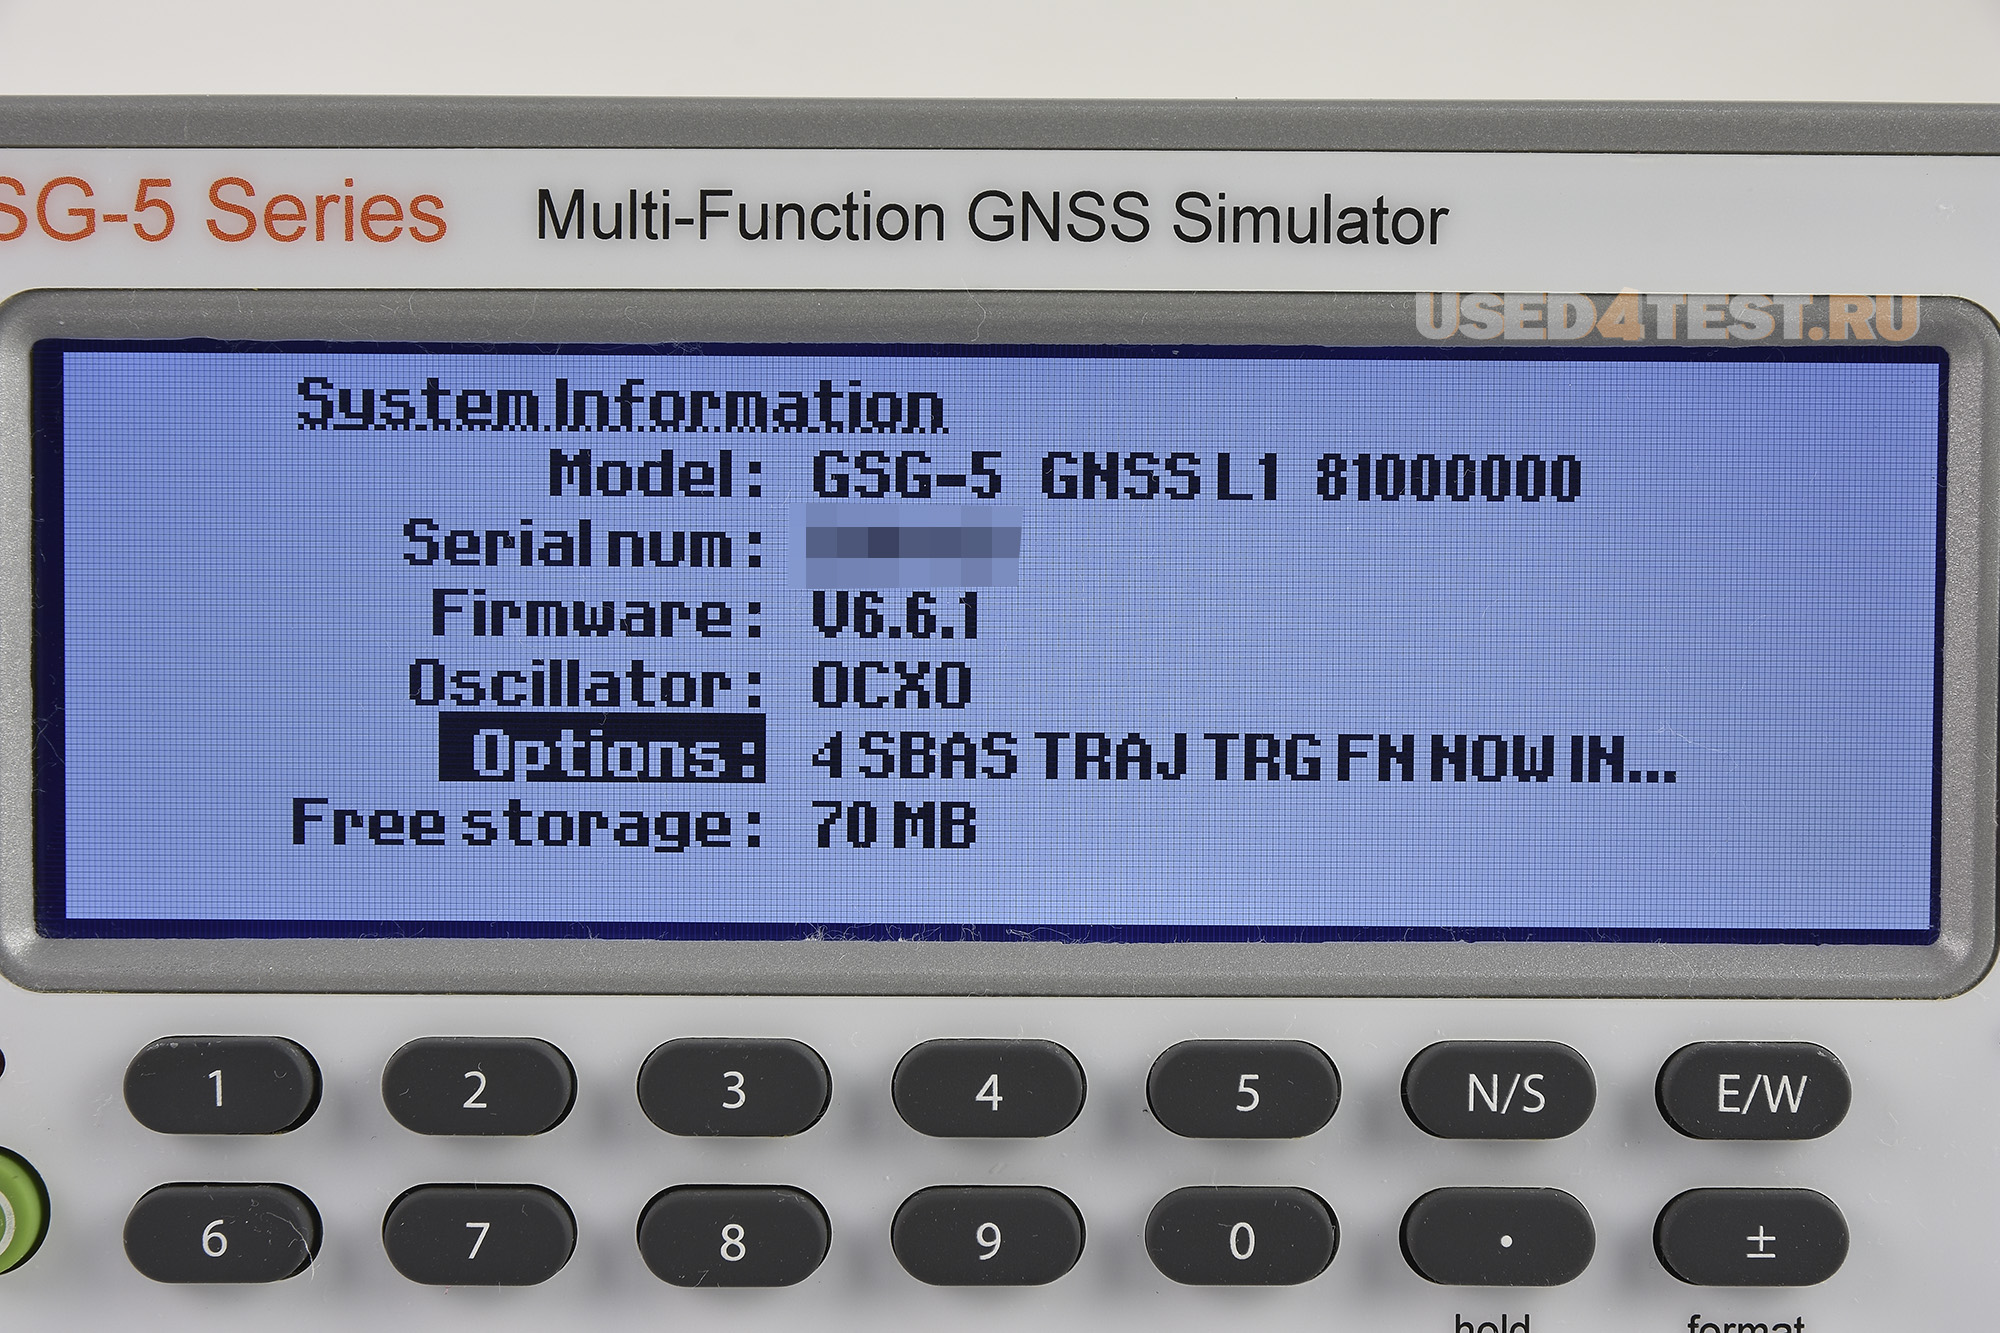 Имитаторы GPS и ГЛОНАСС-сигналов серииGSG-5 Pendulum (Spectracom, Orolia)
